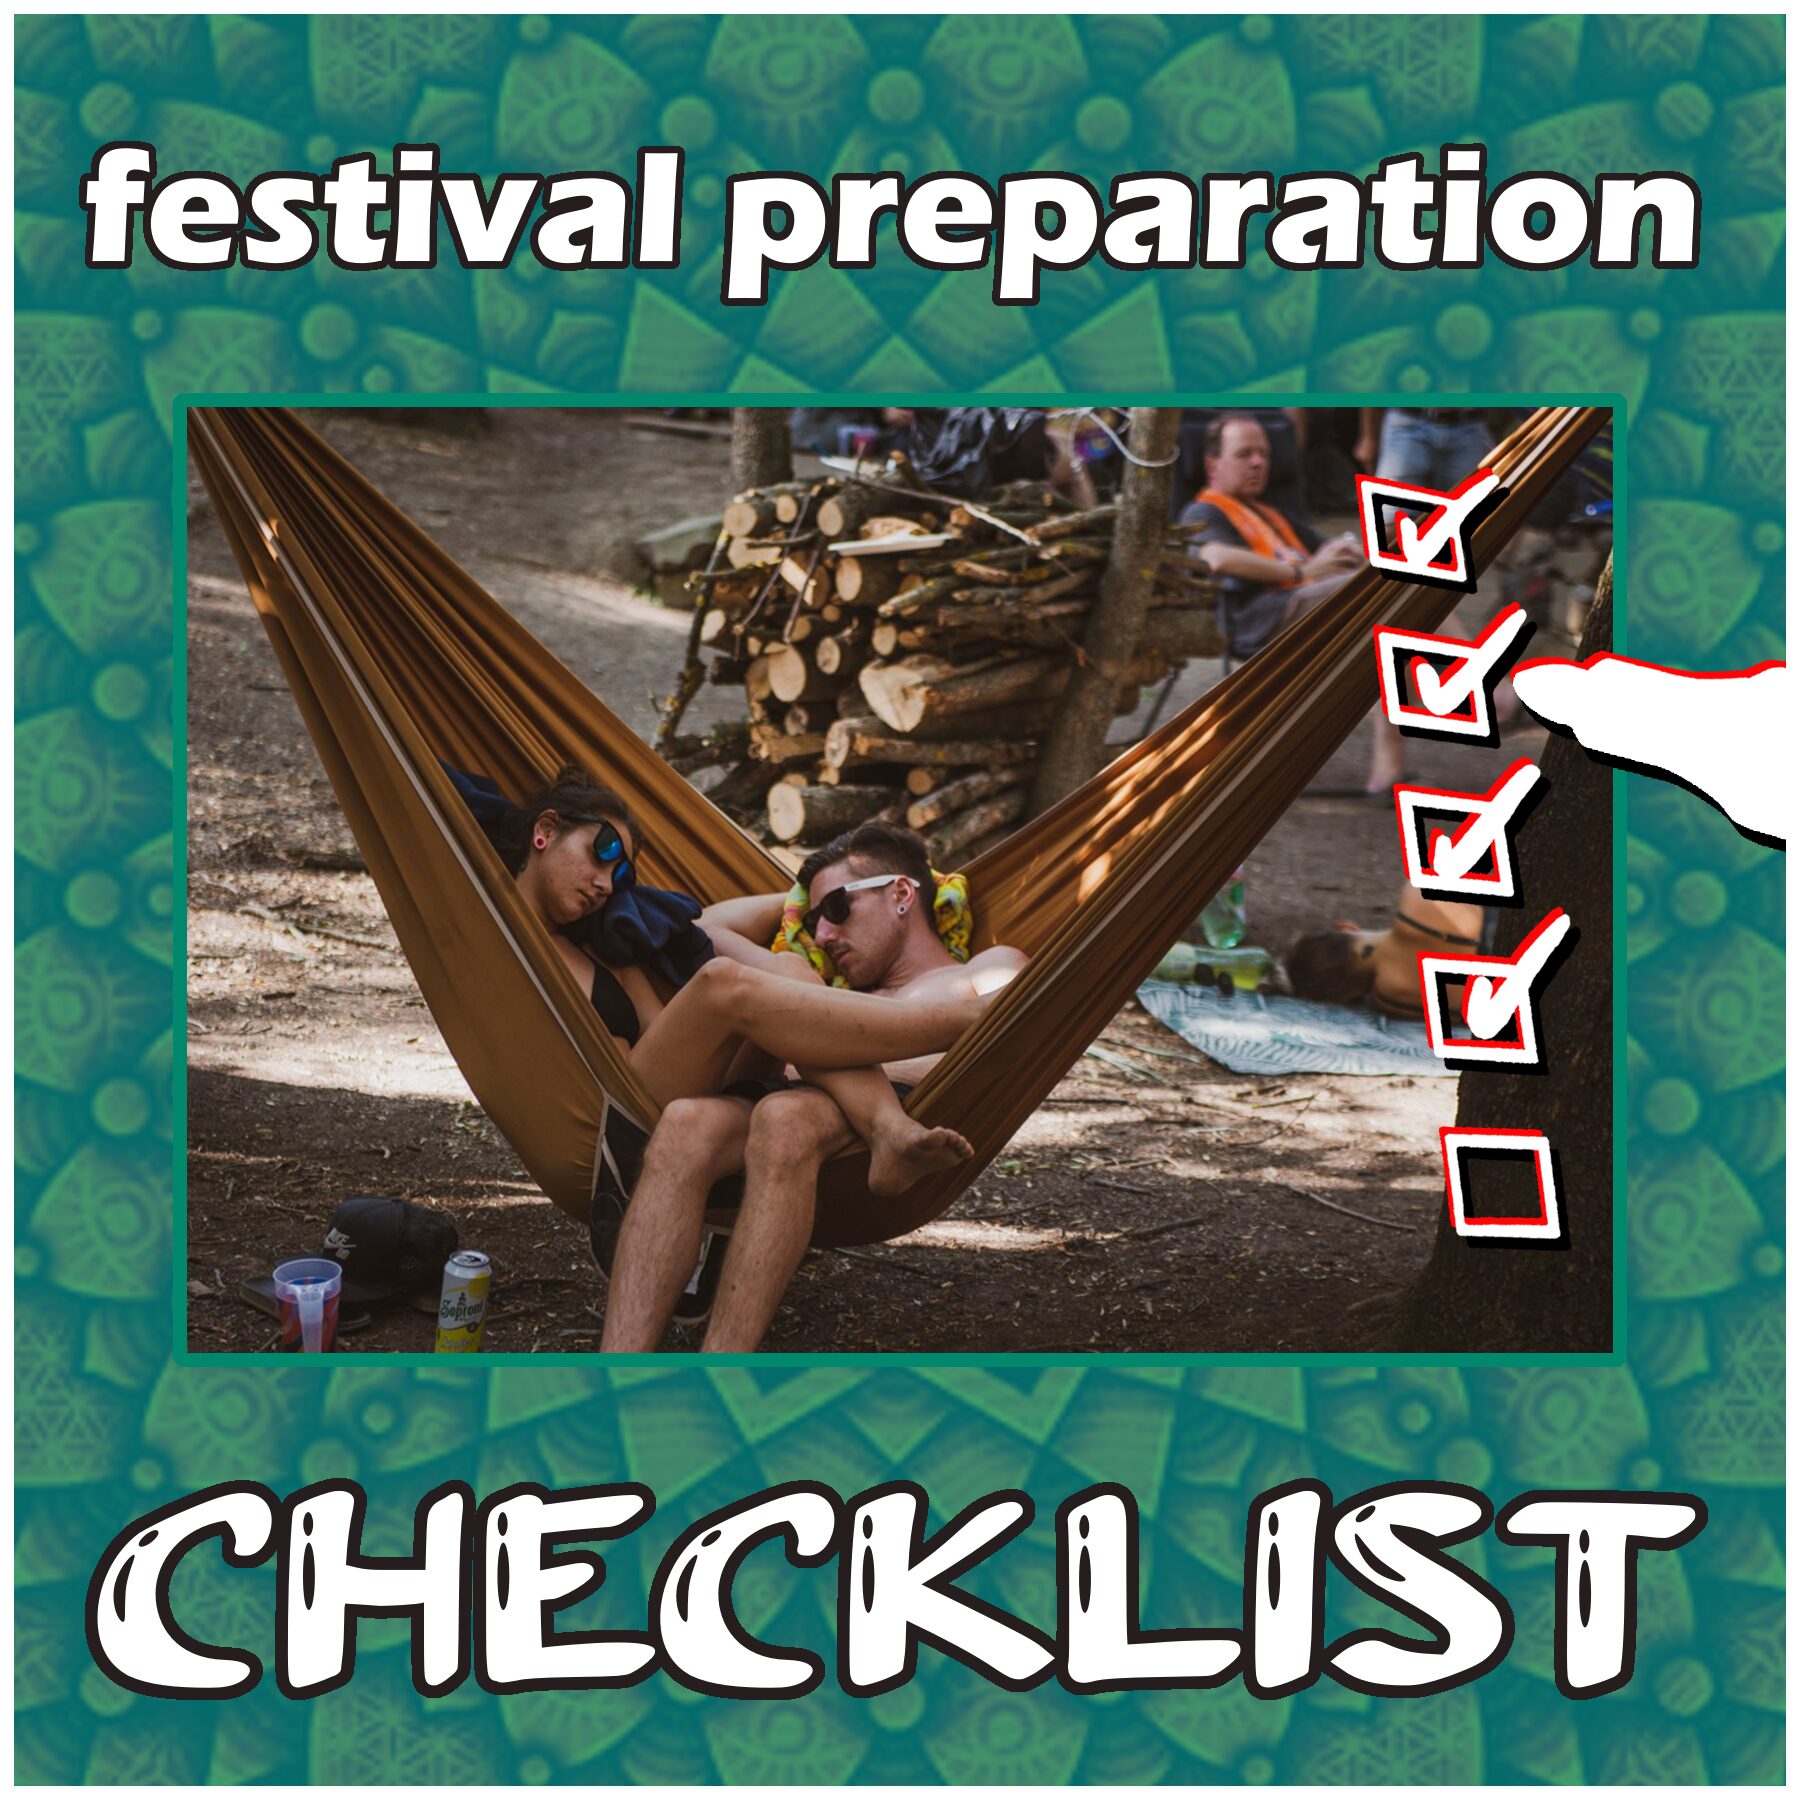 SUN Festival preparation checklist